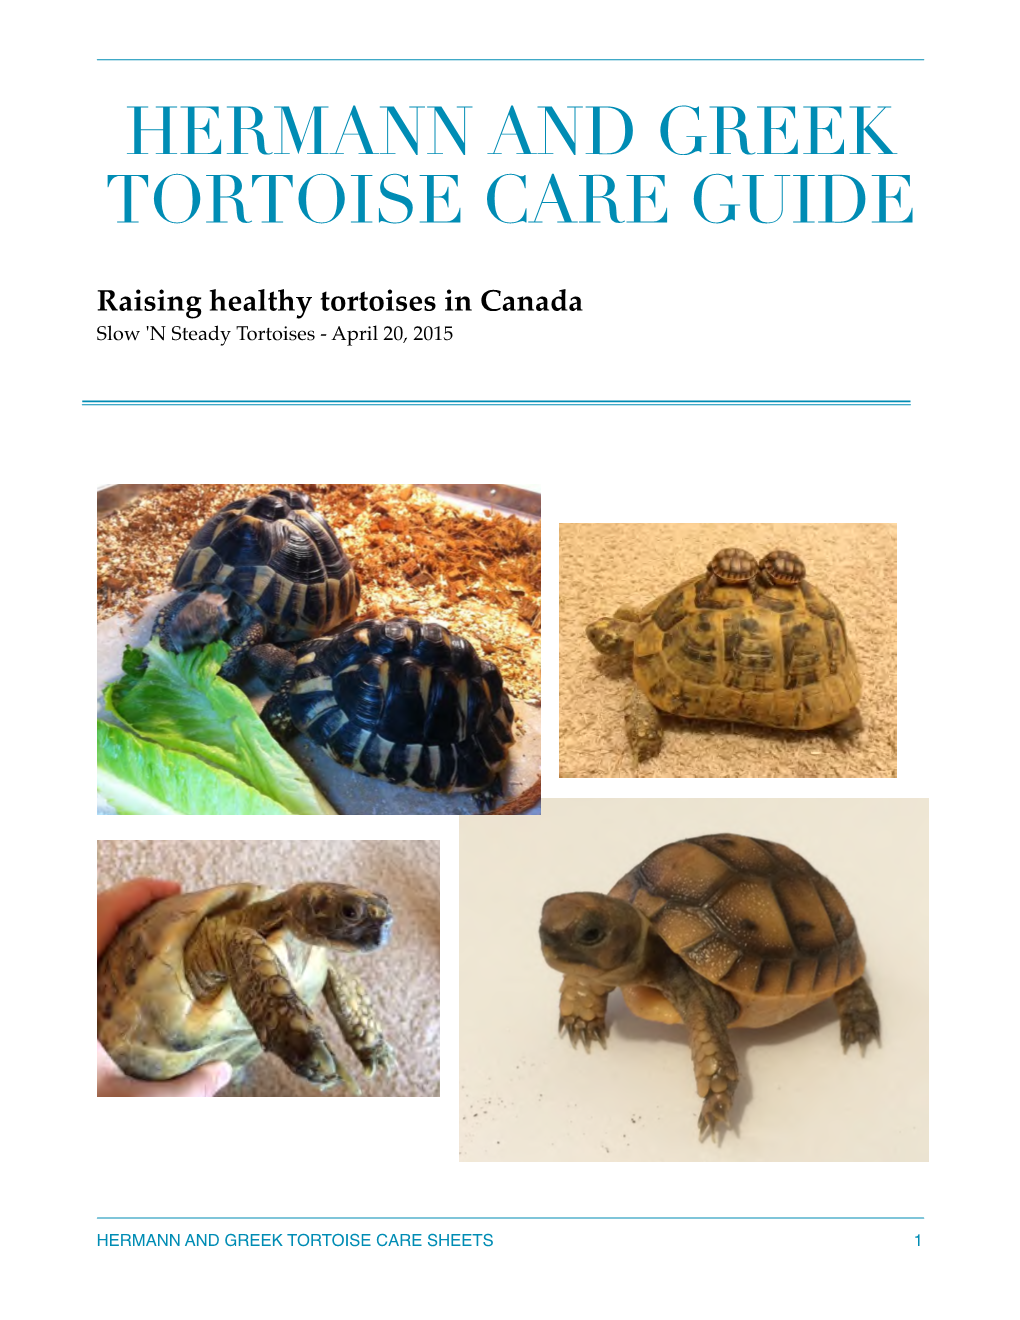 SNS TORTOISES Care Guide April 15 Copy